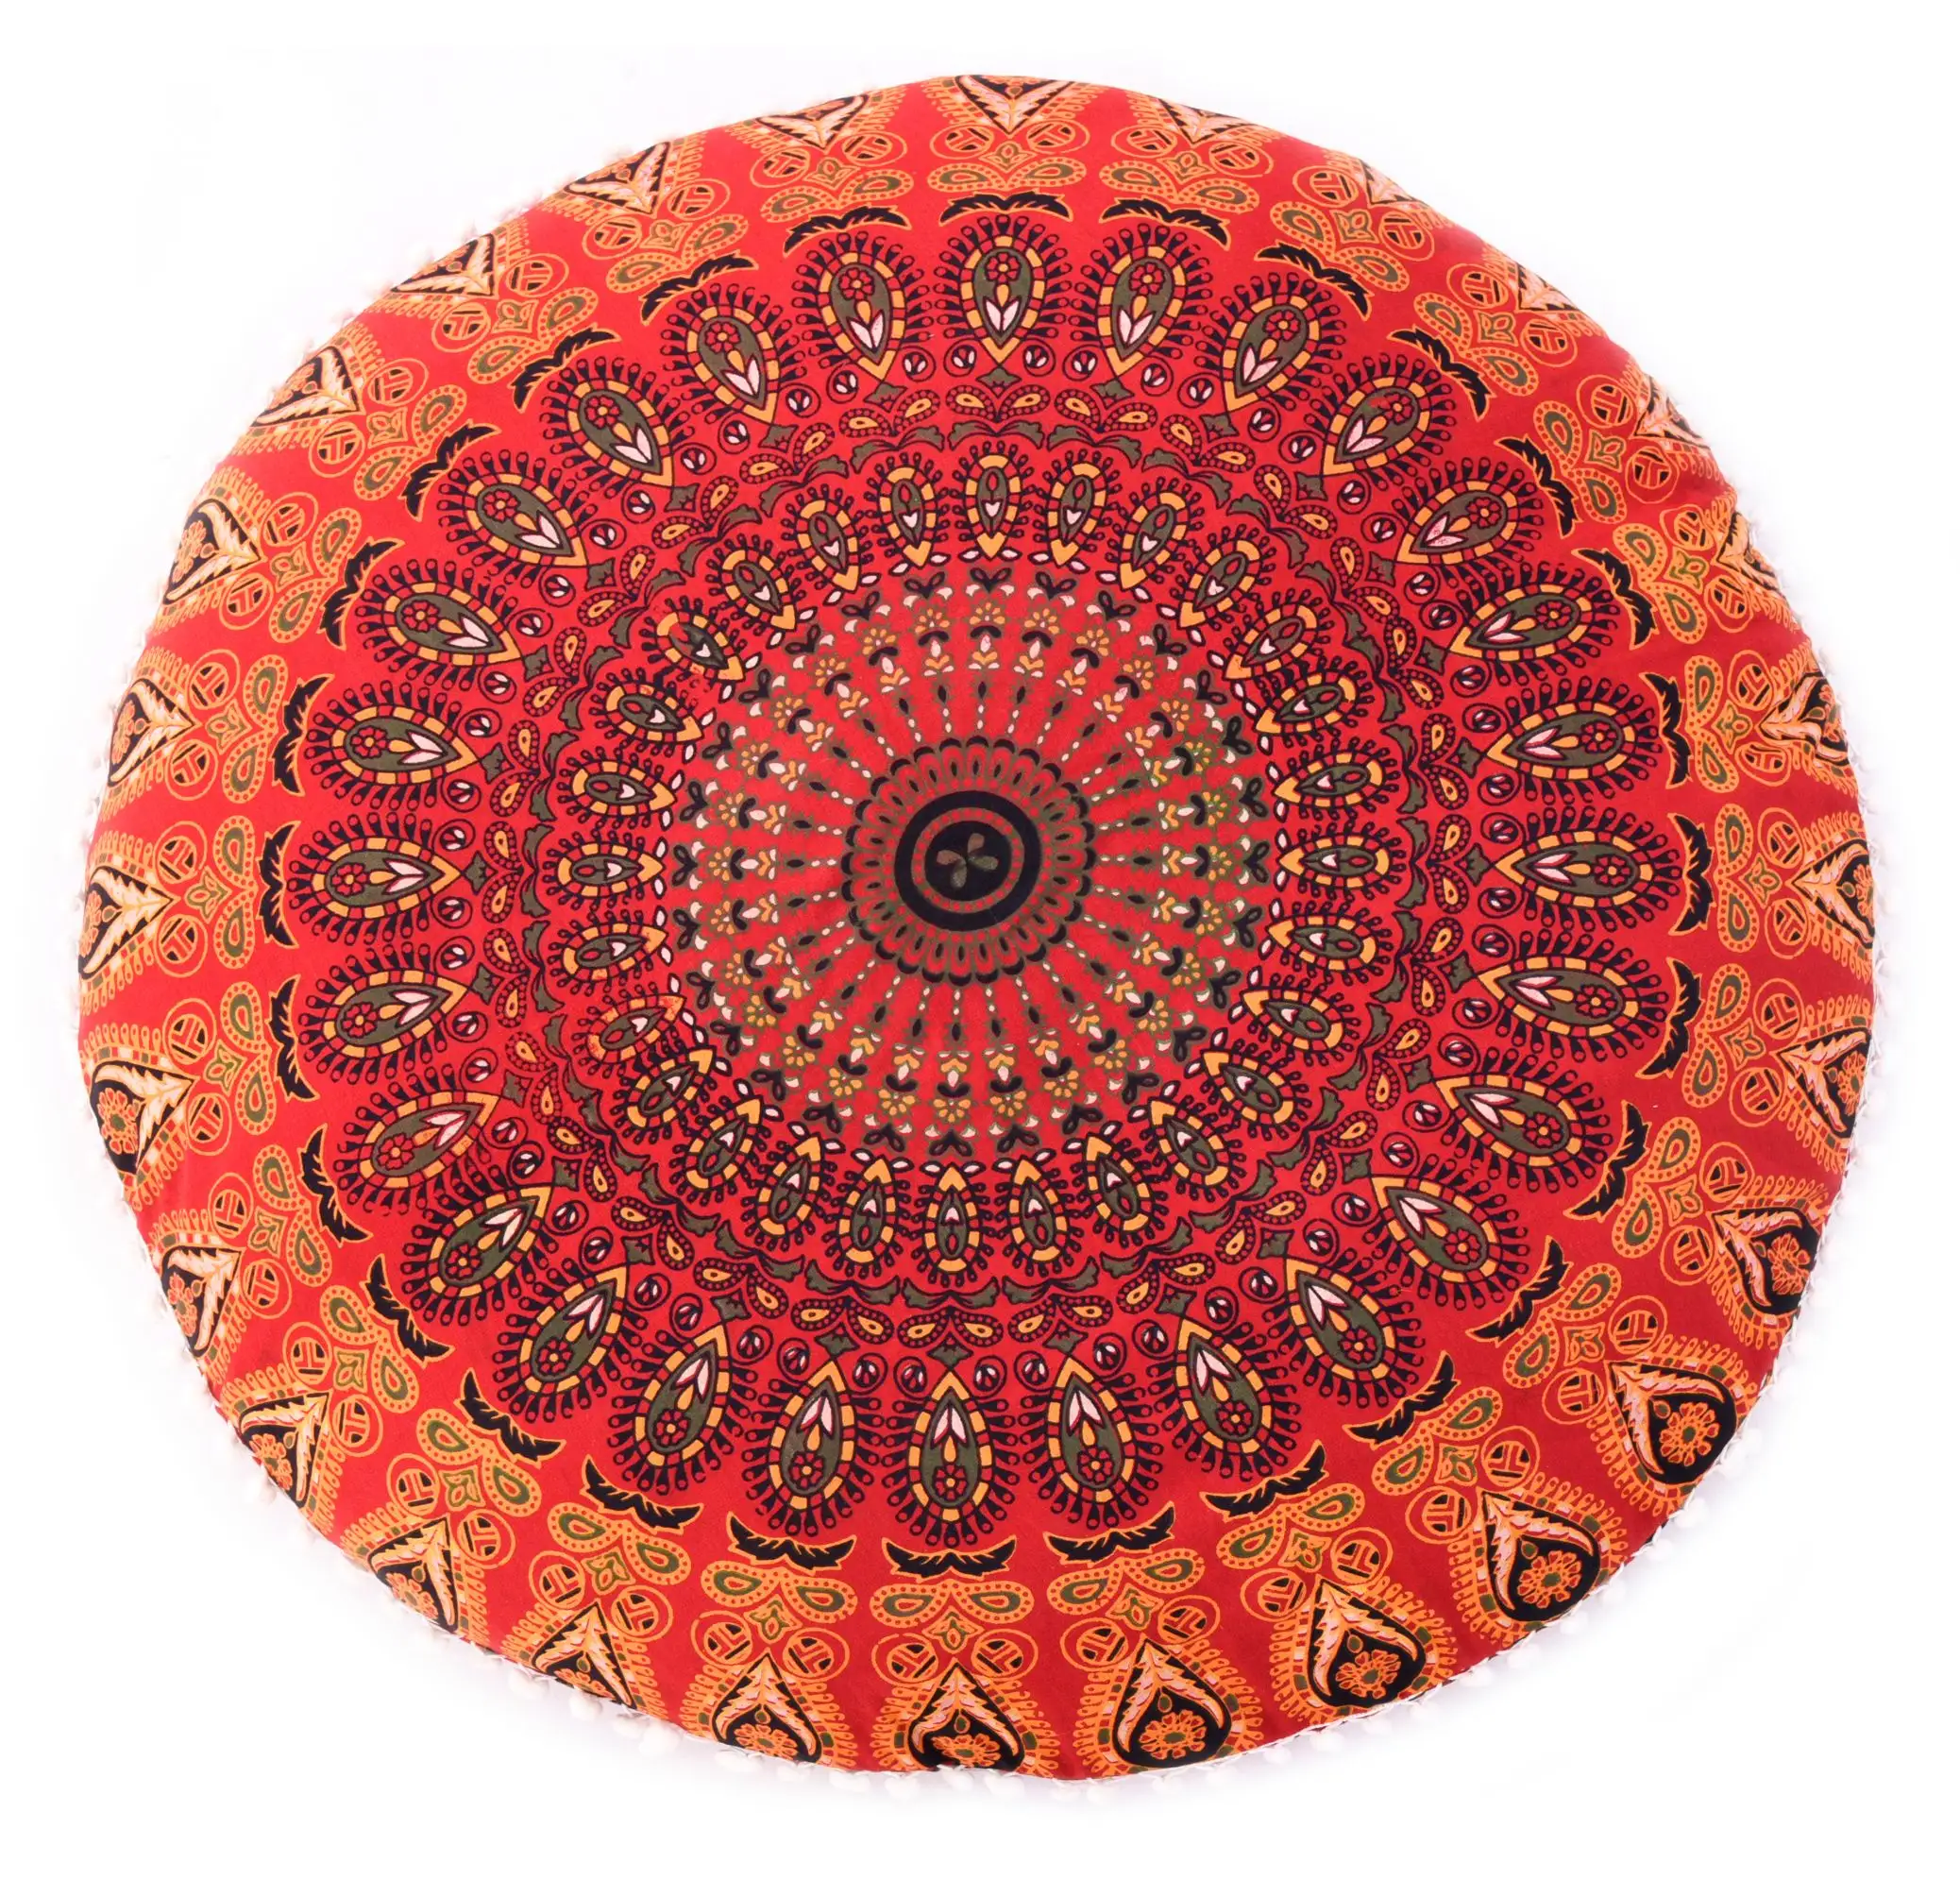 Indischen Dekorative Baumwolle Handgemachte Top Qualität Runde Blume Mandala 32 "Zoll Boden Kissen Abdeckung Kissen Fall